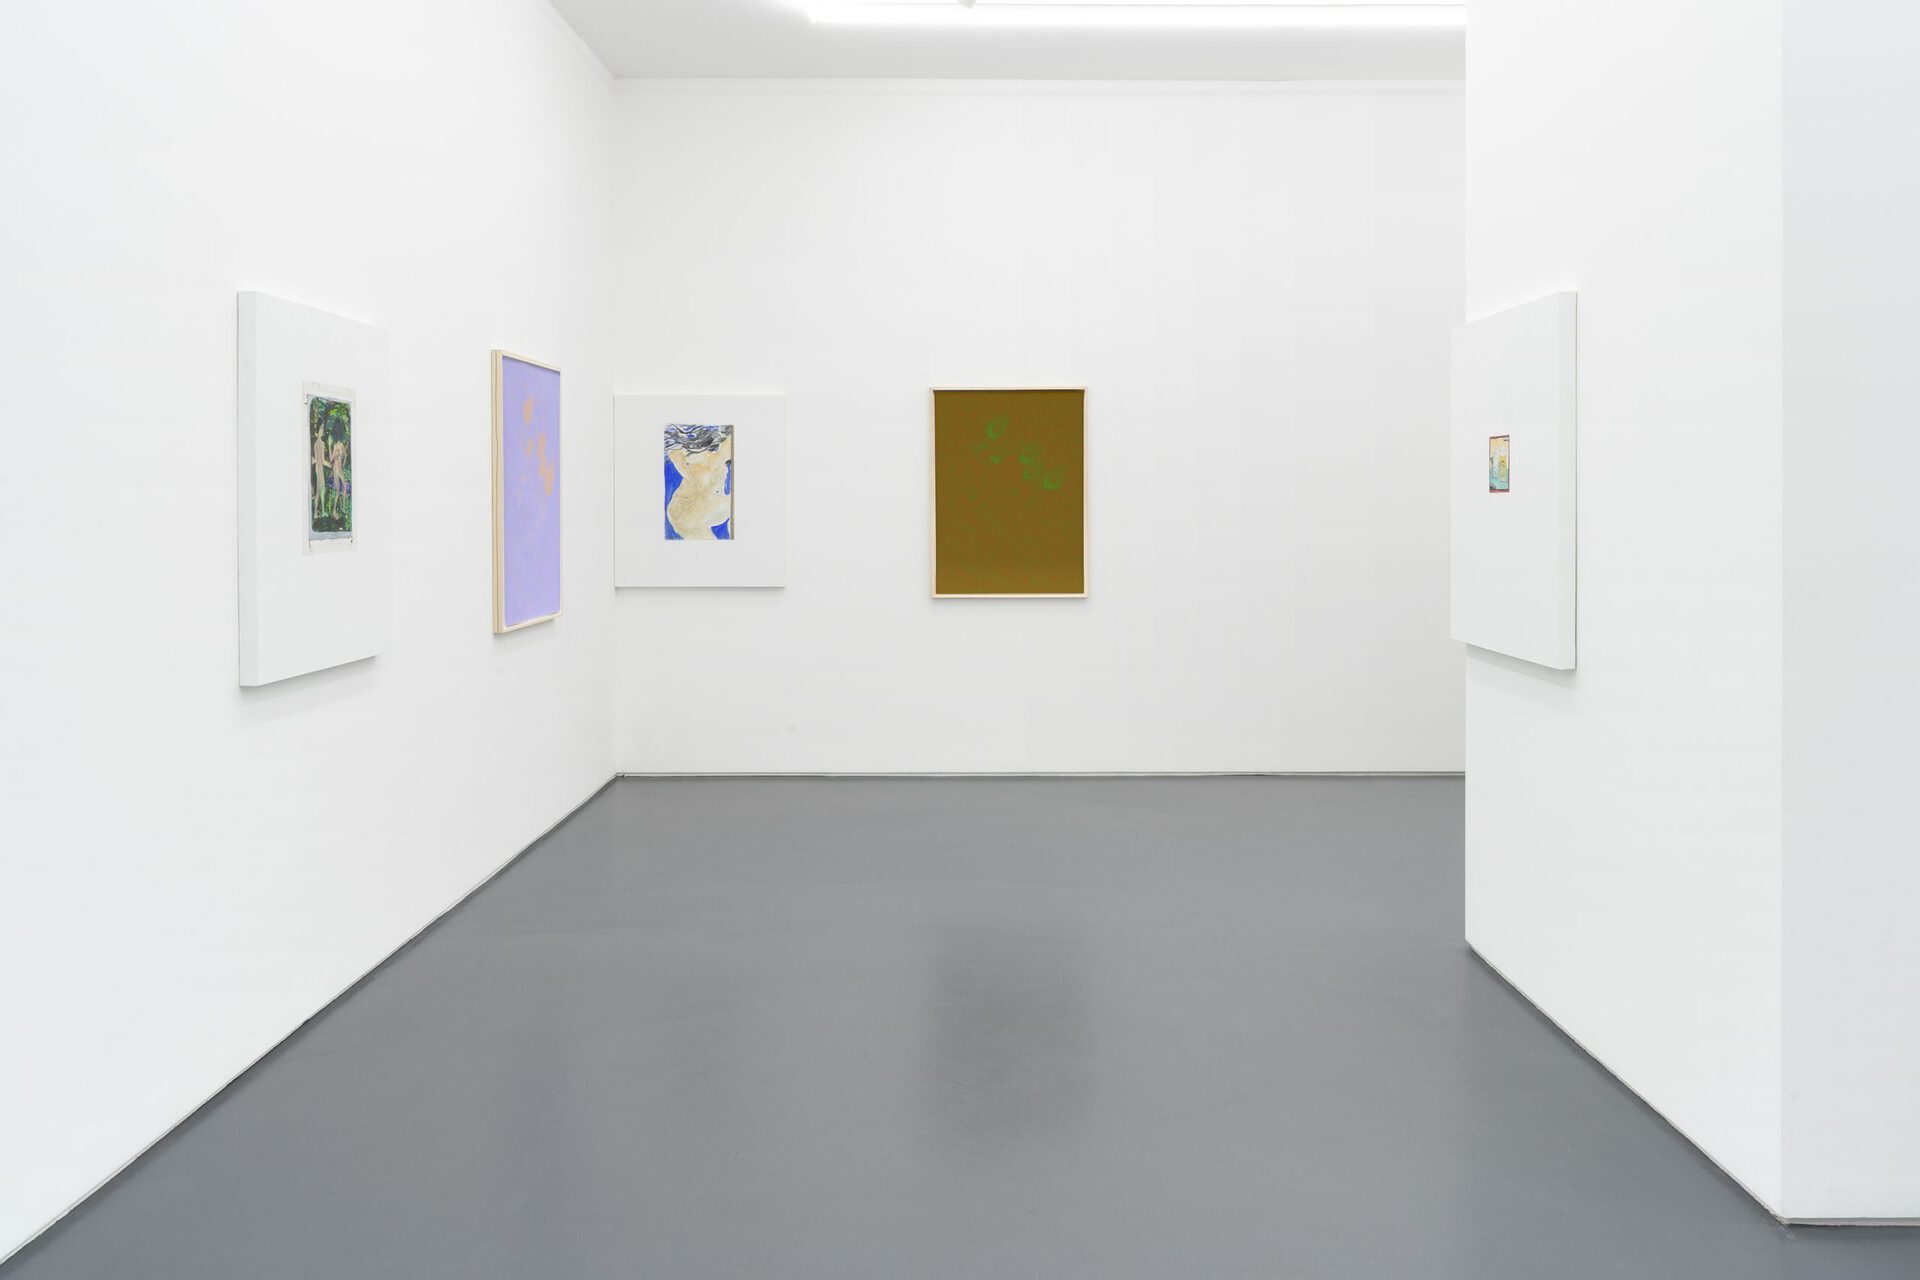 Installation view, Lisa Holzer; John Matthew Heard, dependent, Mountains, Berlin, 2021